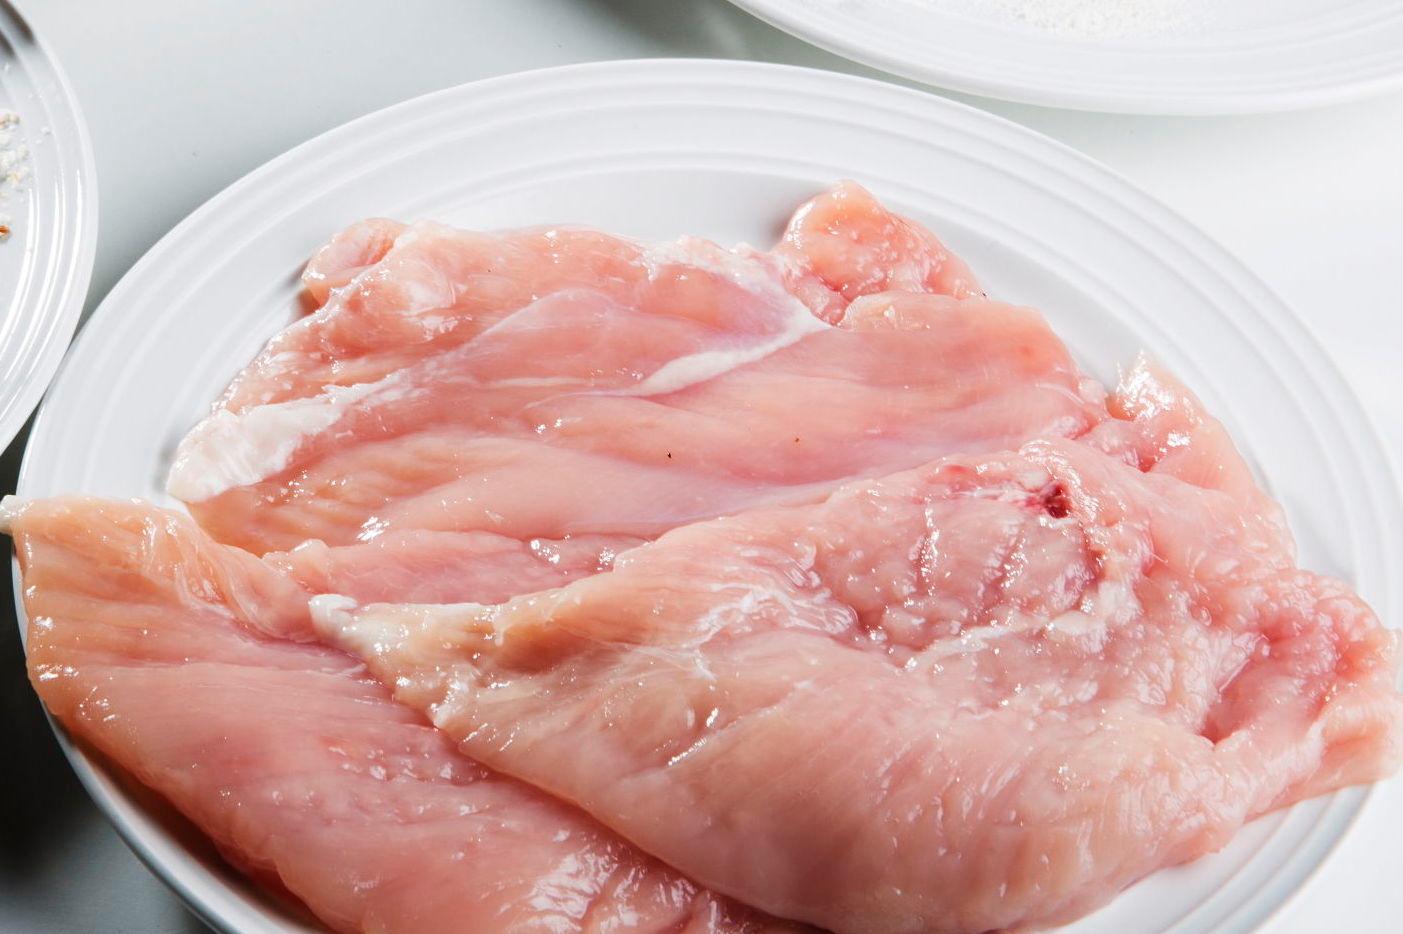 IKKE BRUK KOSTEN: Vær forsiktig hvis du bruker oppvaskkosten til  skylle vekk for eksempel rå kylling. Foto: Magnar Kirknes/VG